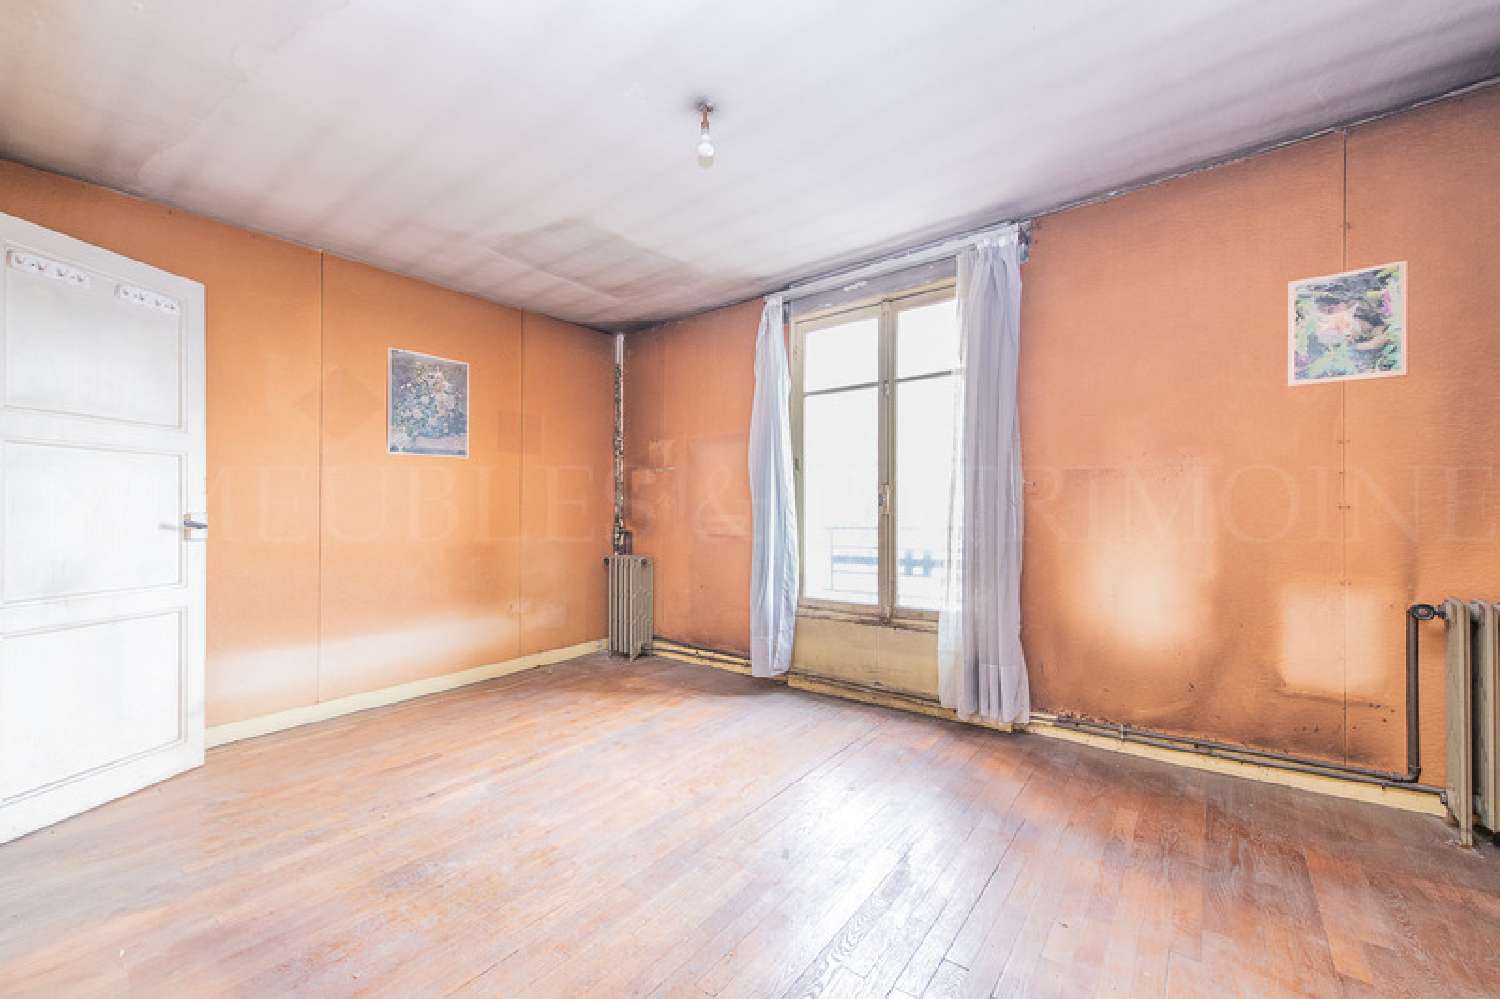  for sale apartment Boulogne-Billancourt Hauts-de-Seine 2